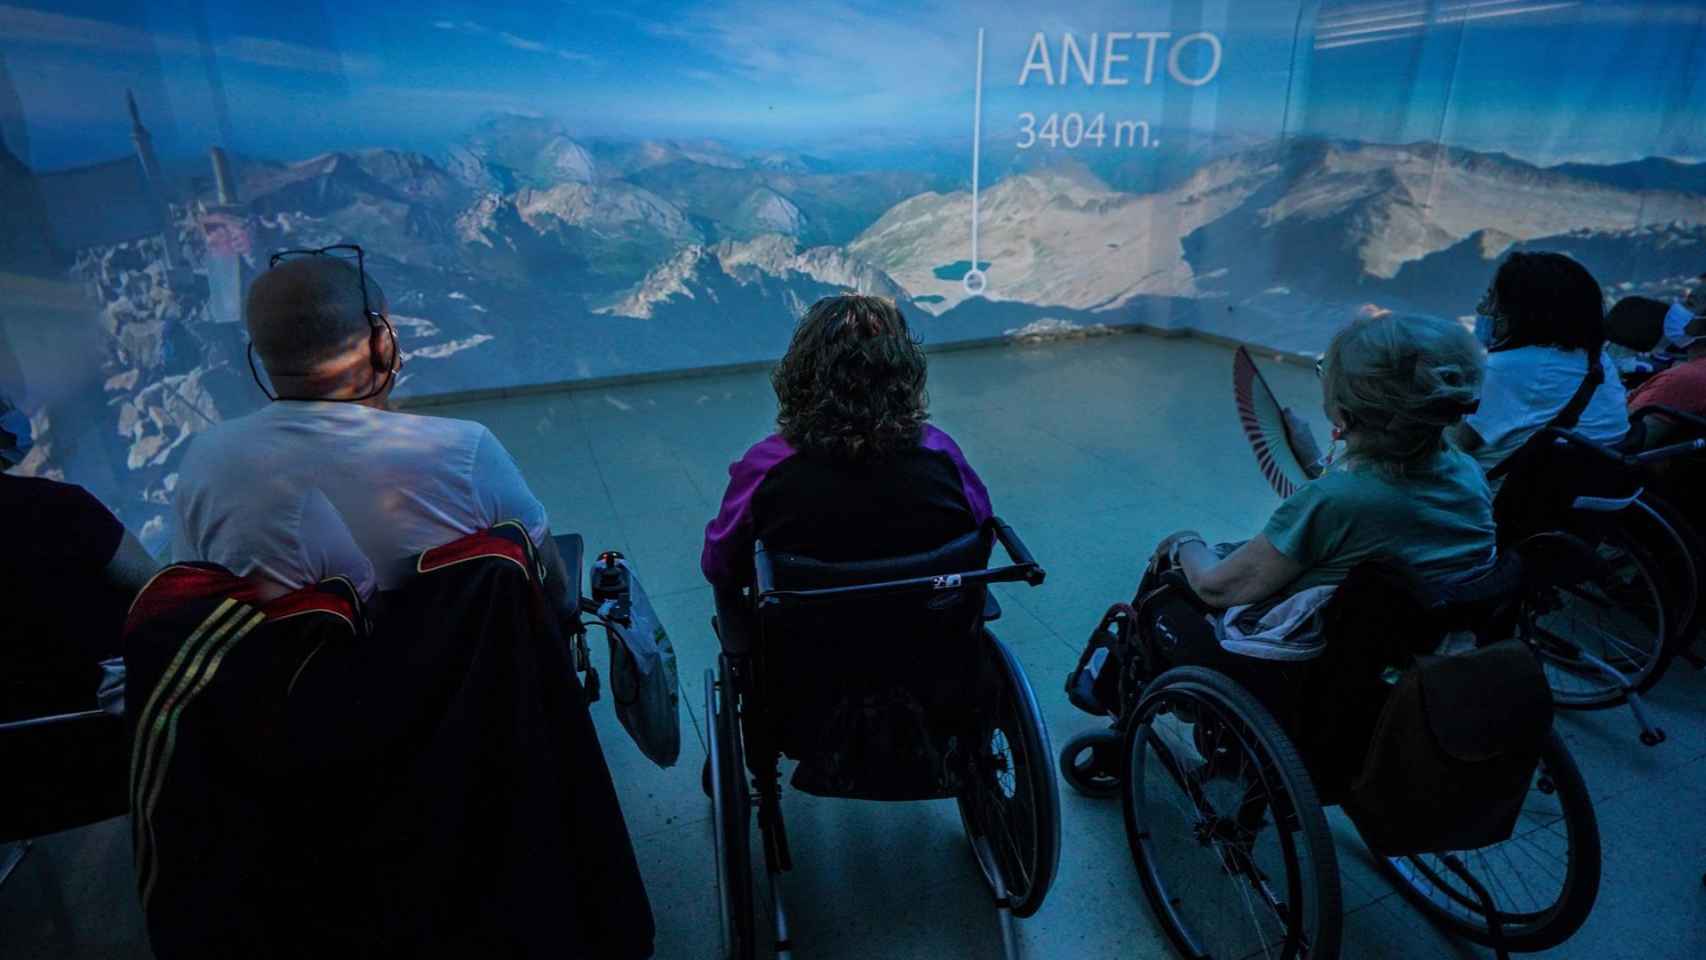 Pacientes de Parapléjicos hacen cumbre en el Aneto gracias a Salomon